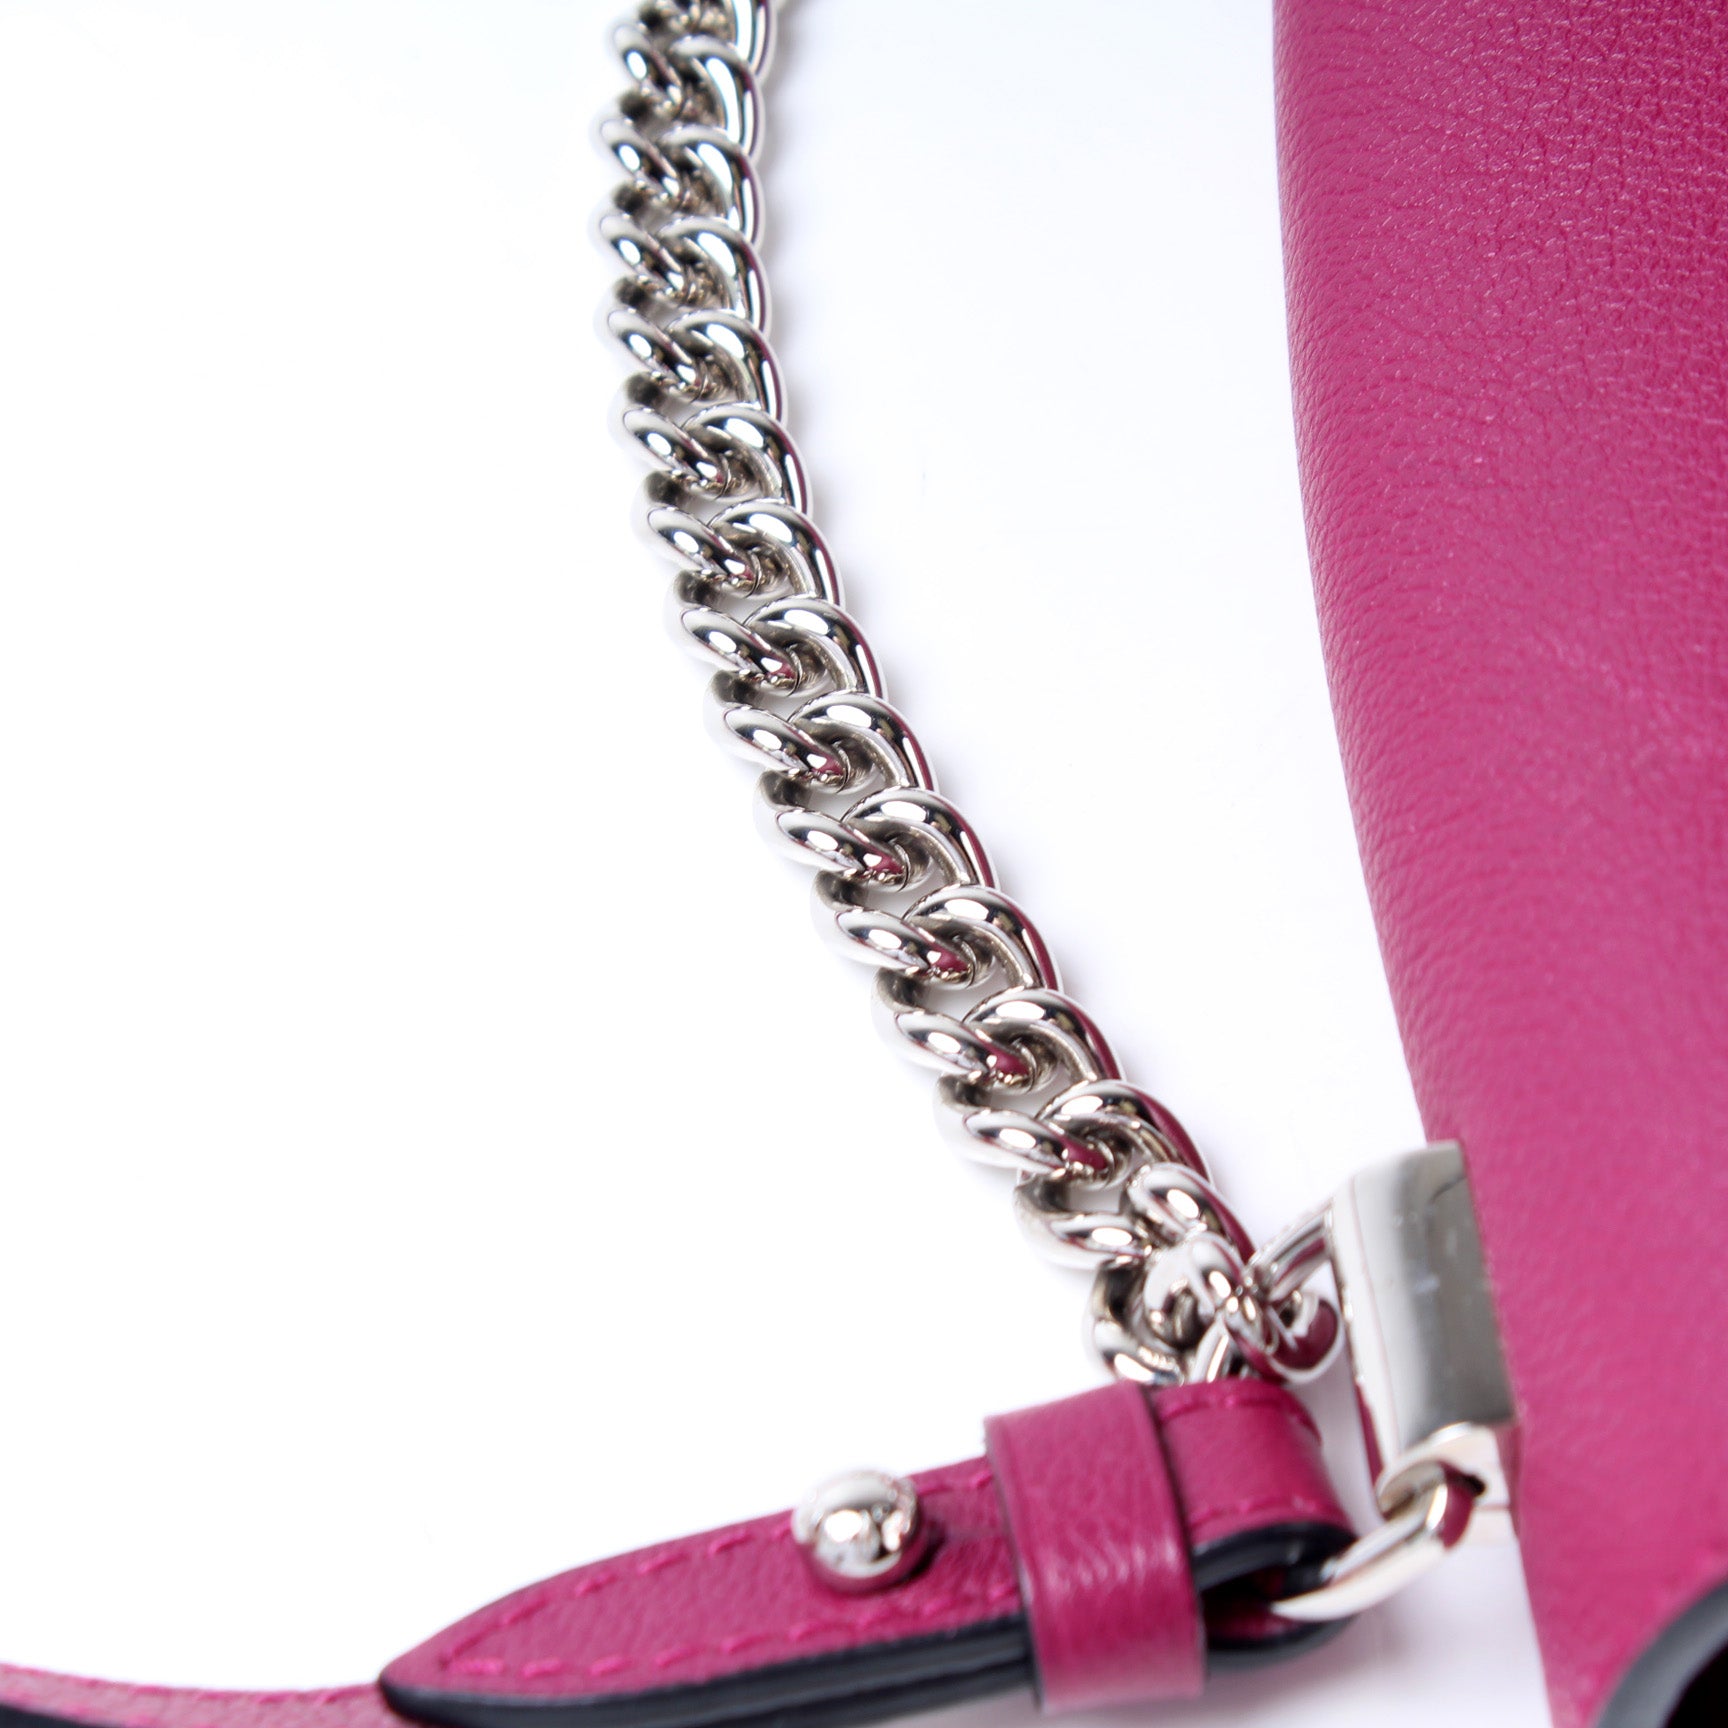 Lockme II BB – Keeks Designer Handbags